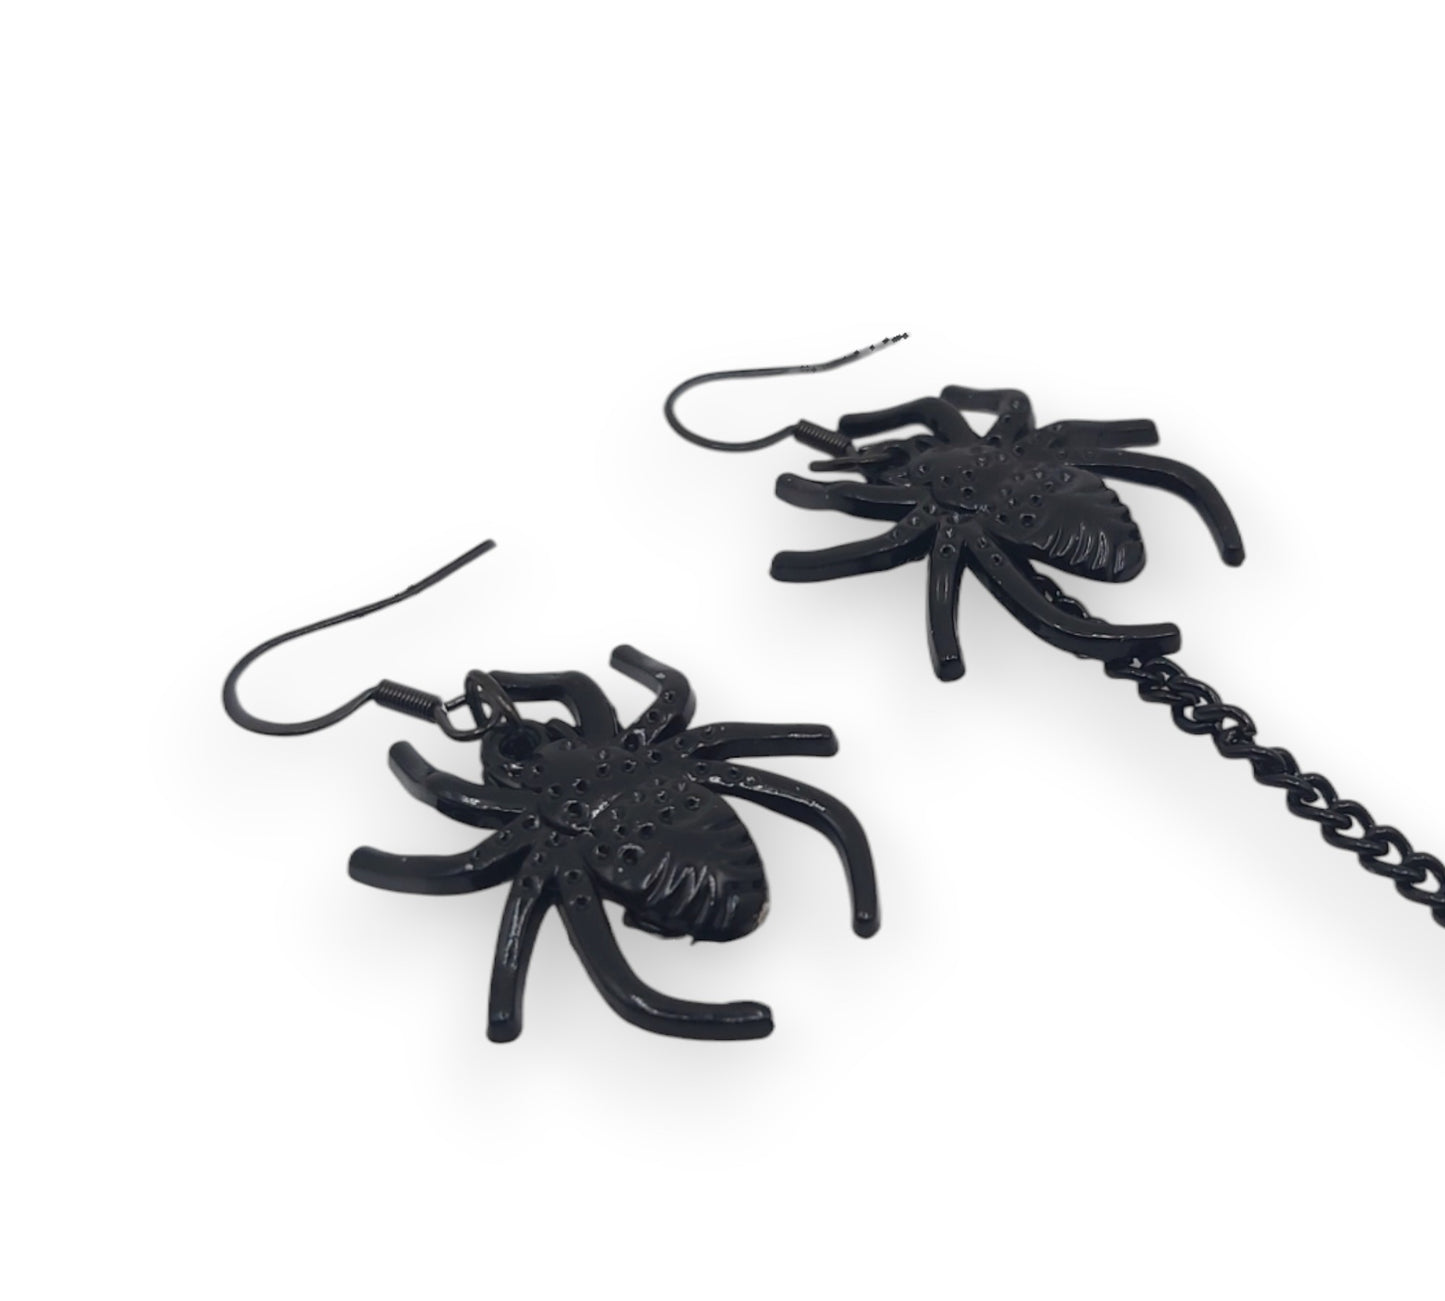 Zwarte Spider oorbellen voor gehoorapparaten